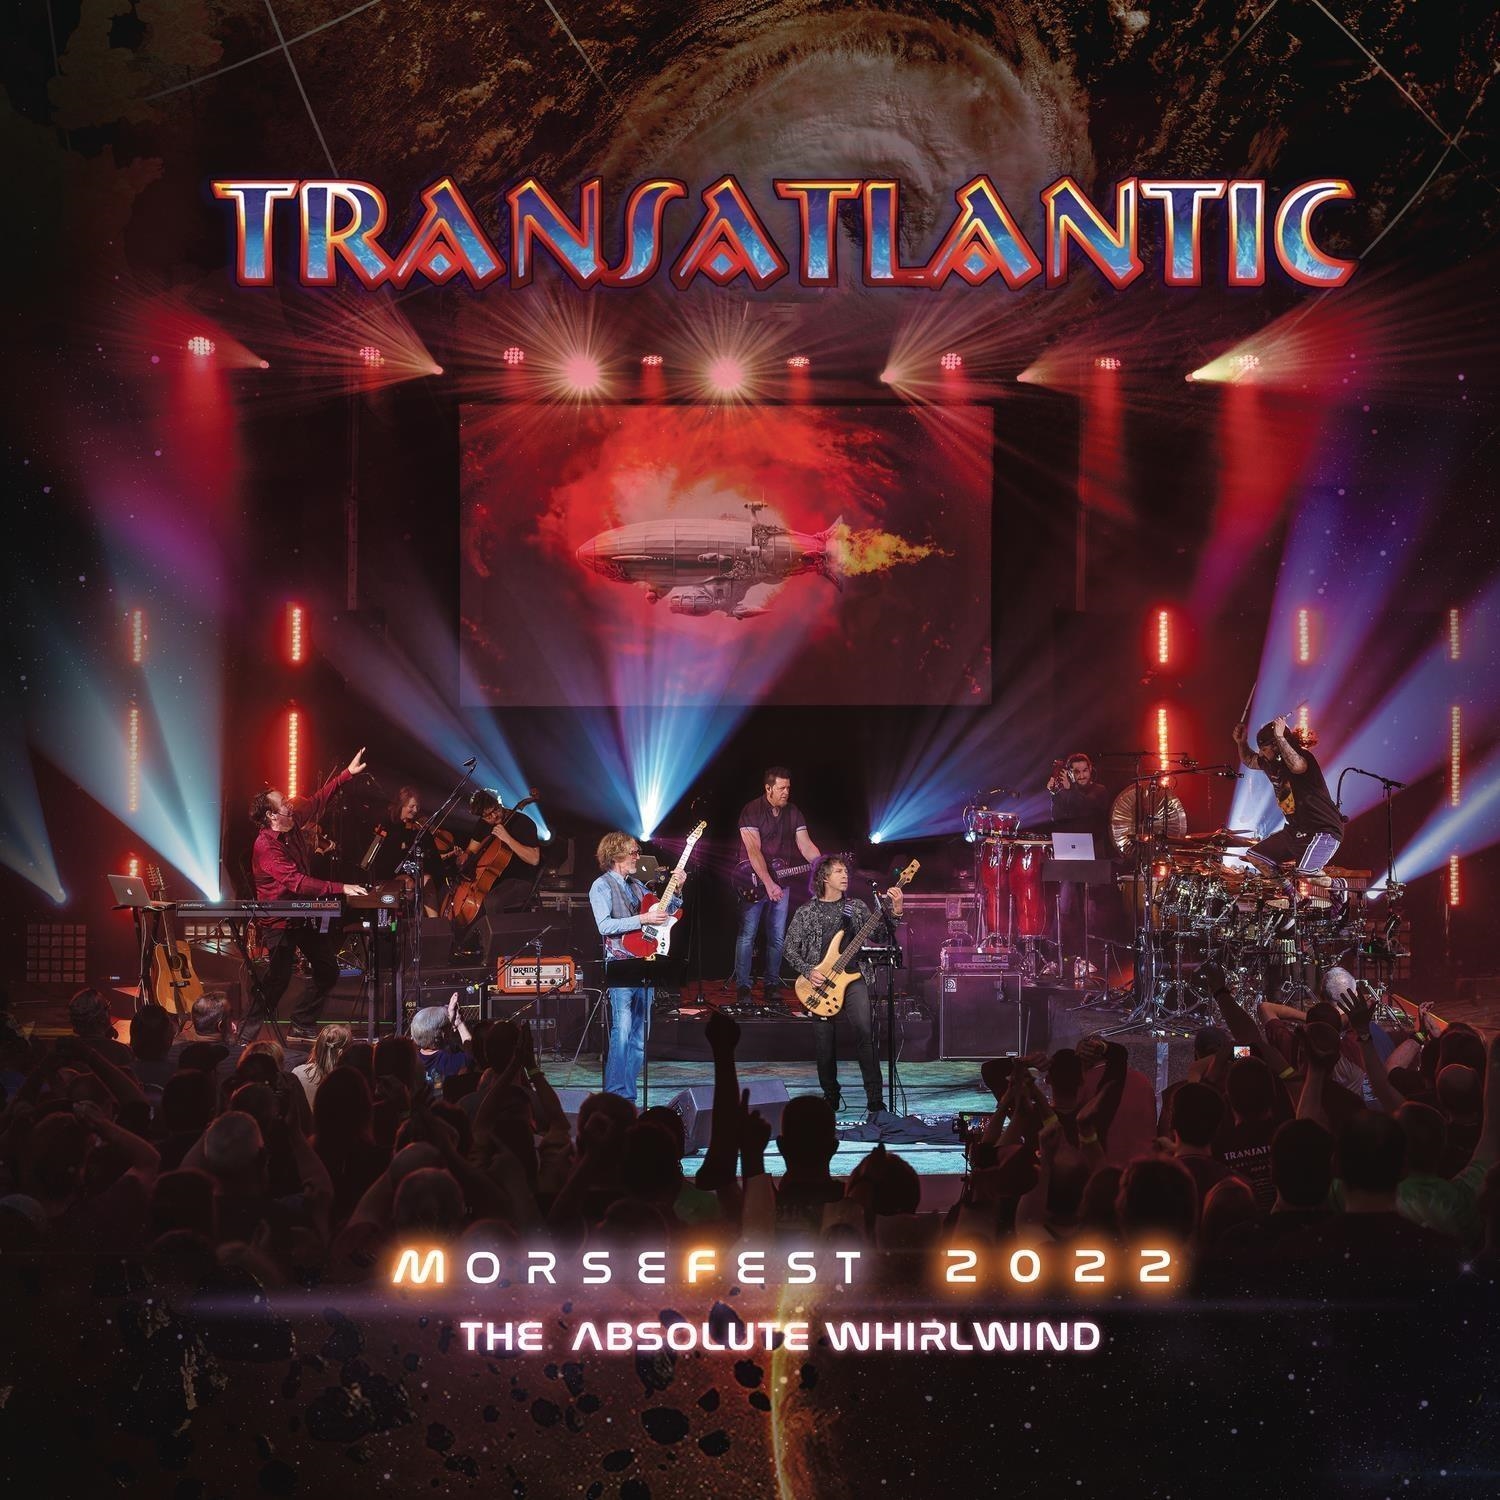 Audio Cd Transatlantic - Live At Morsefest 2022 (Limited Deluxe) (5 Cd+2 Blu-Ray) NUOVO SIGILLATO, EDIZIONE DEL 08/03/2024 SUBITO DISPONIBILE